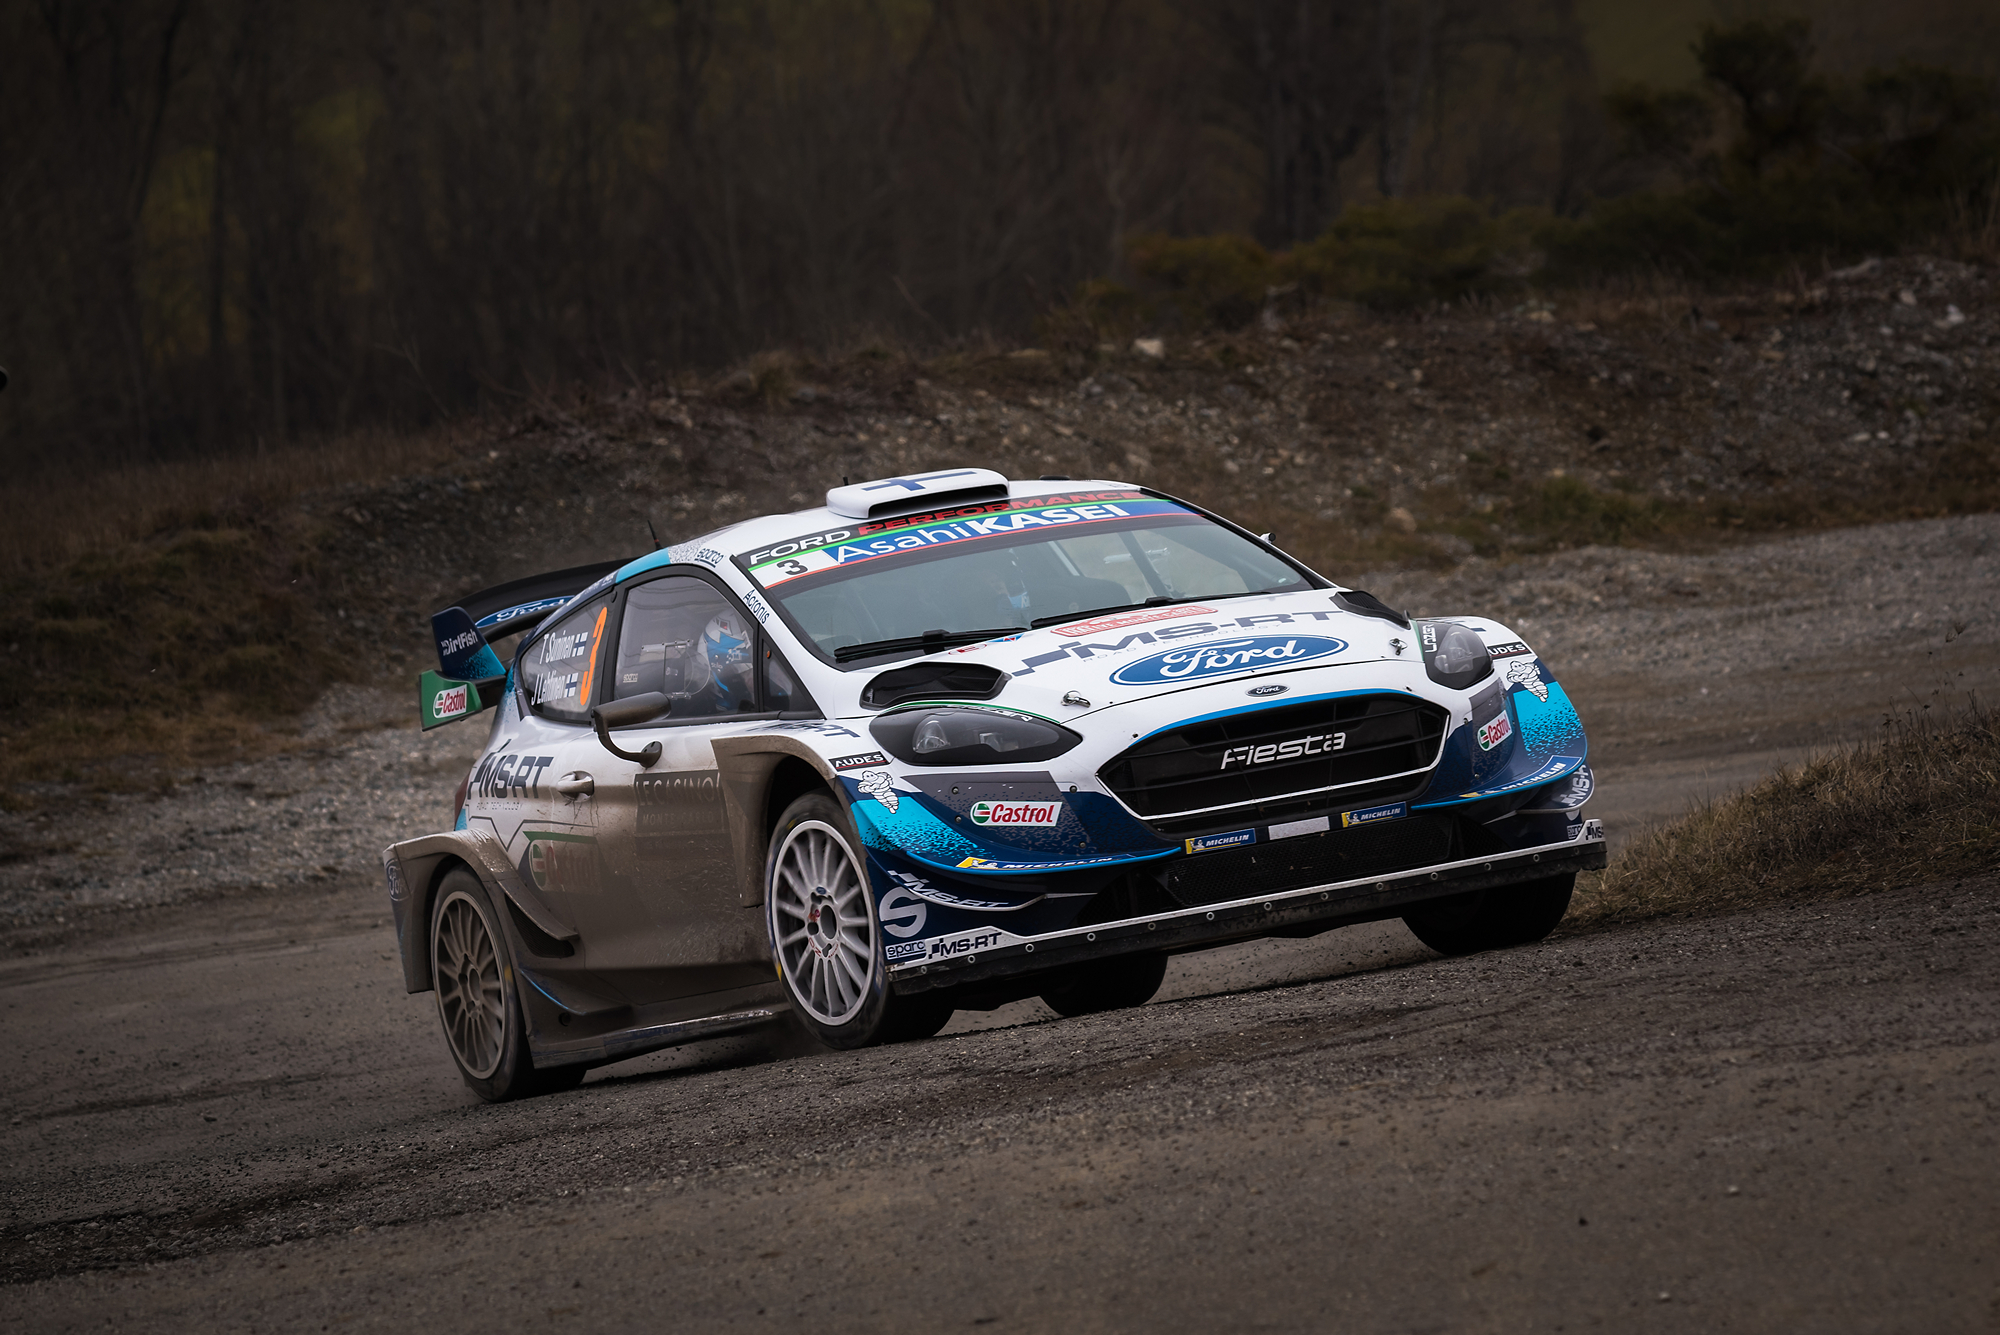 WRC Rallye de Montecarlo 2020 - Suninen/Lehtinen...